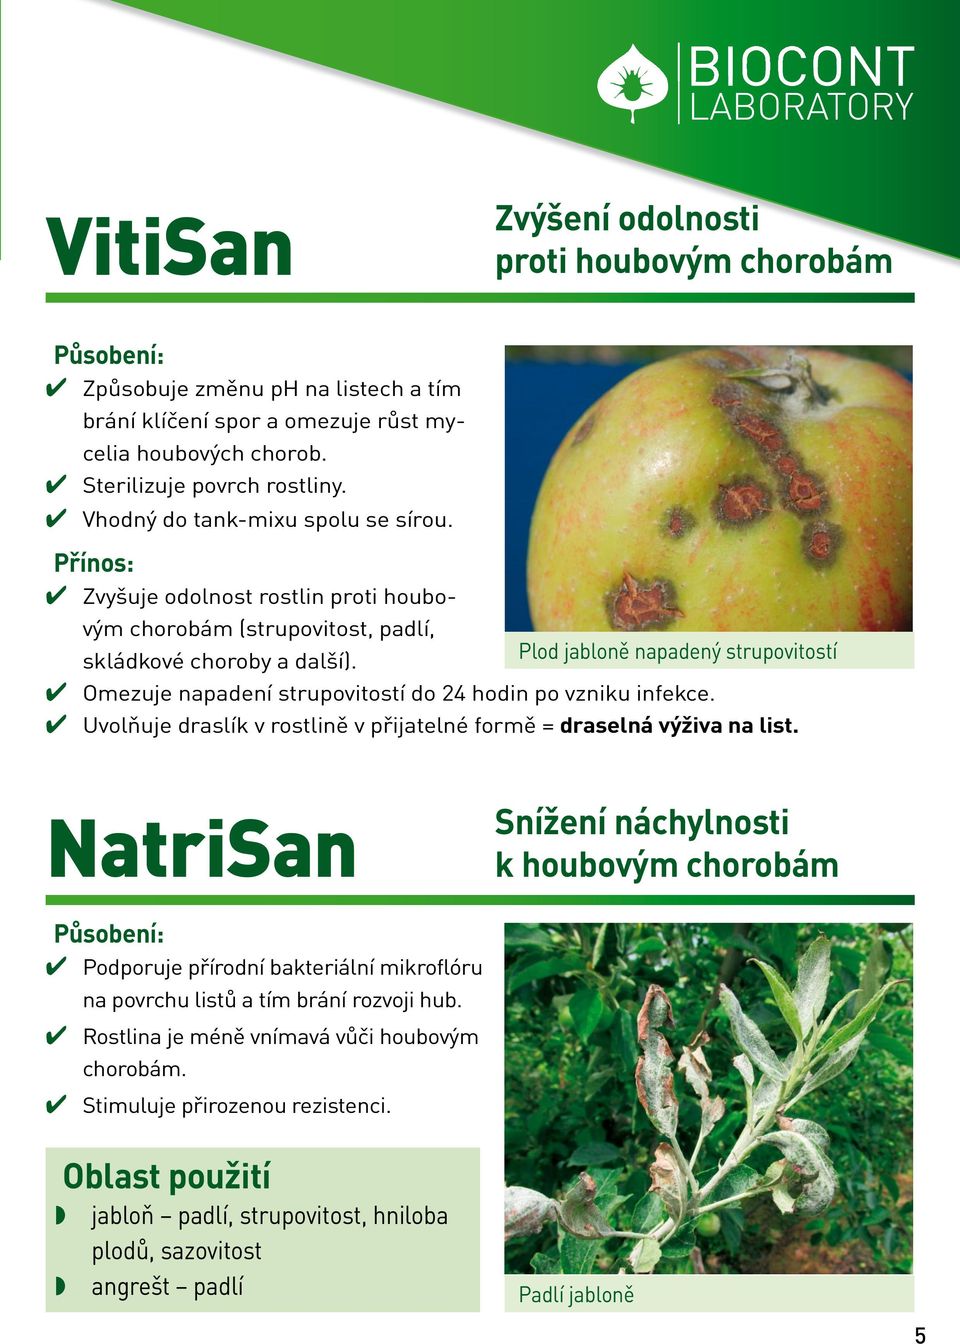 Plod jabloně napadený strupovitostí Omezuje napadení strupovitostí do 24 hodin po vzniku infekce. Uvolňuje draslík v rostlině v přijatelné formě = draselná výživa na list.